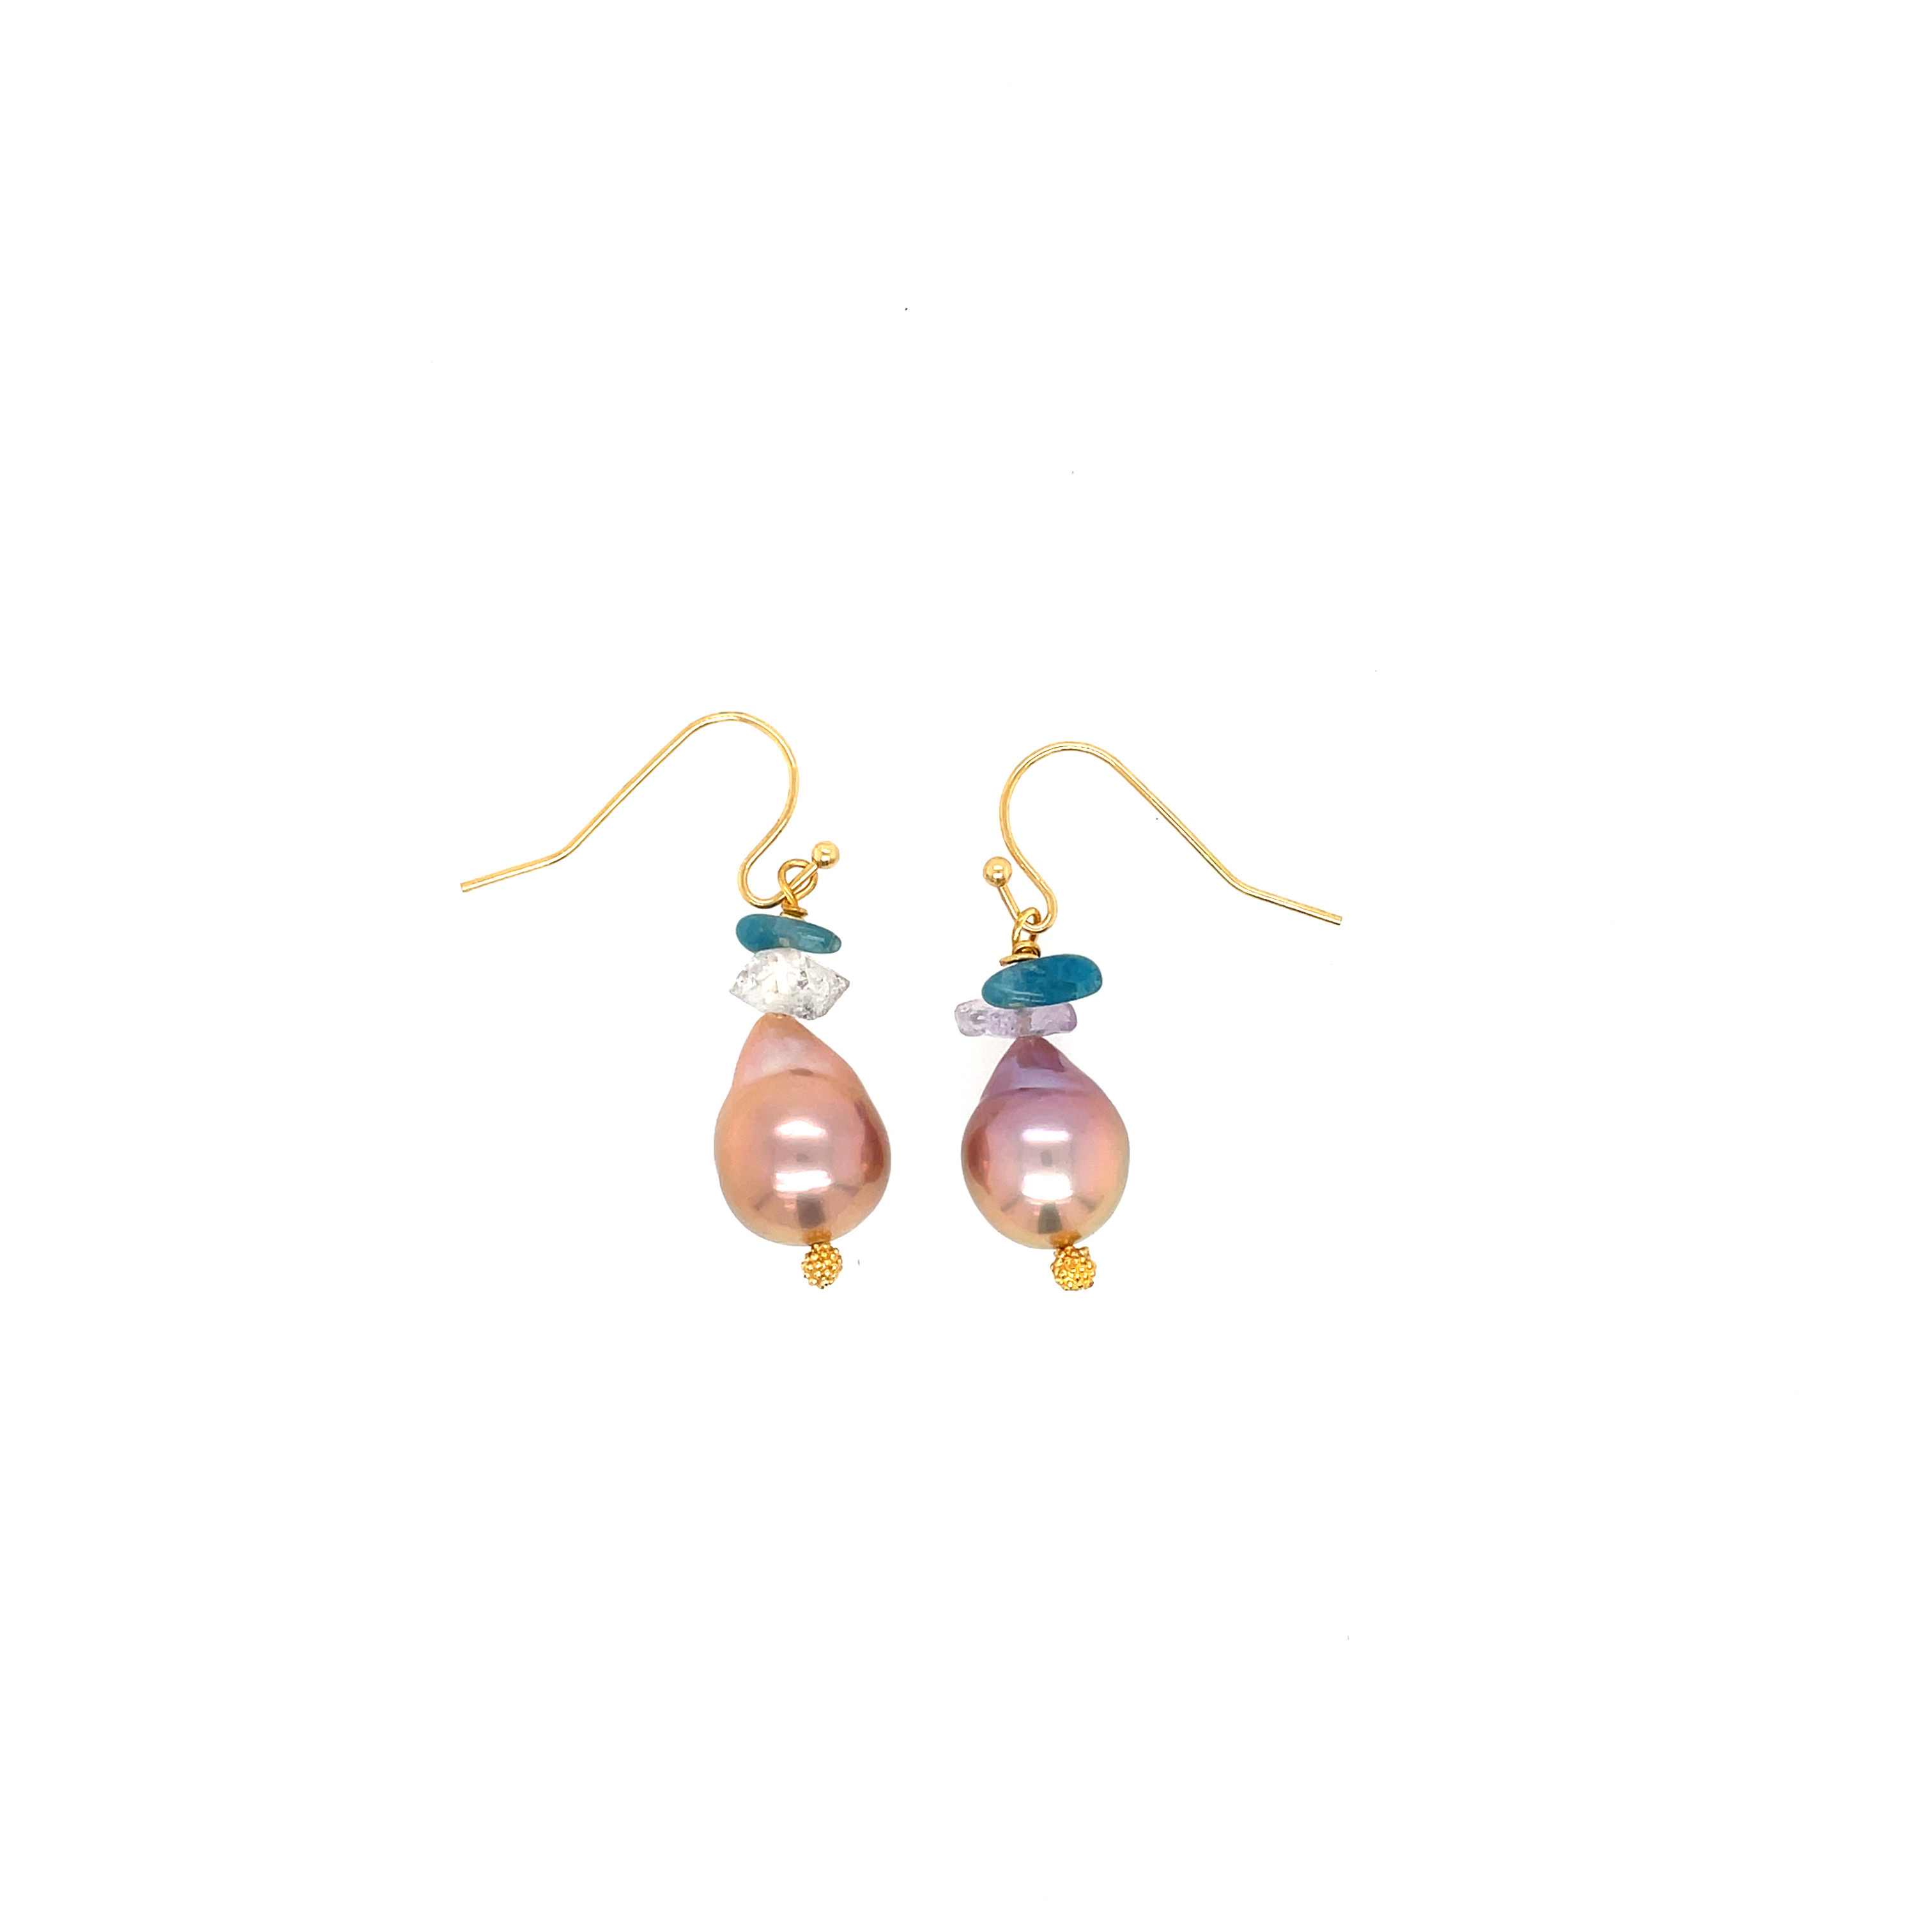 Prismatic drop shape, sherbet, colored pearl earrings on Goldfield shepherd hooks